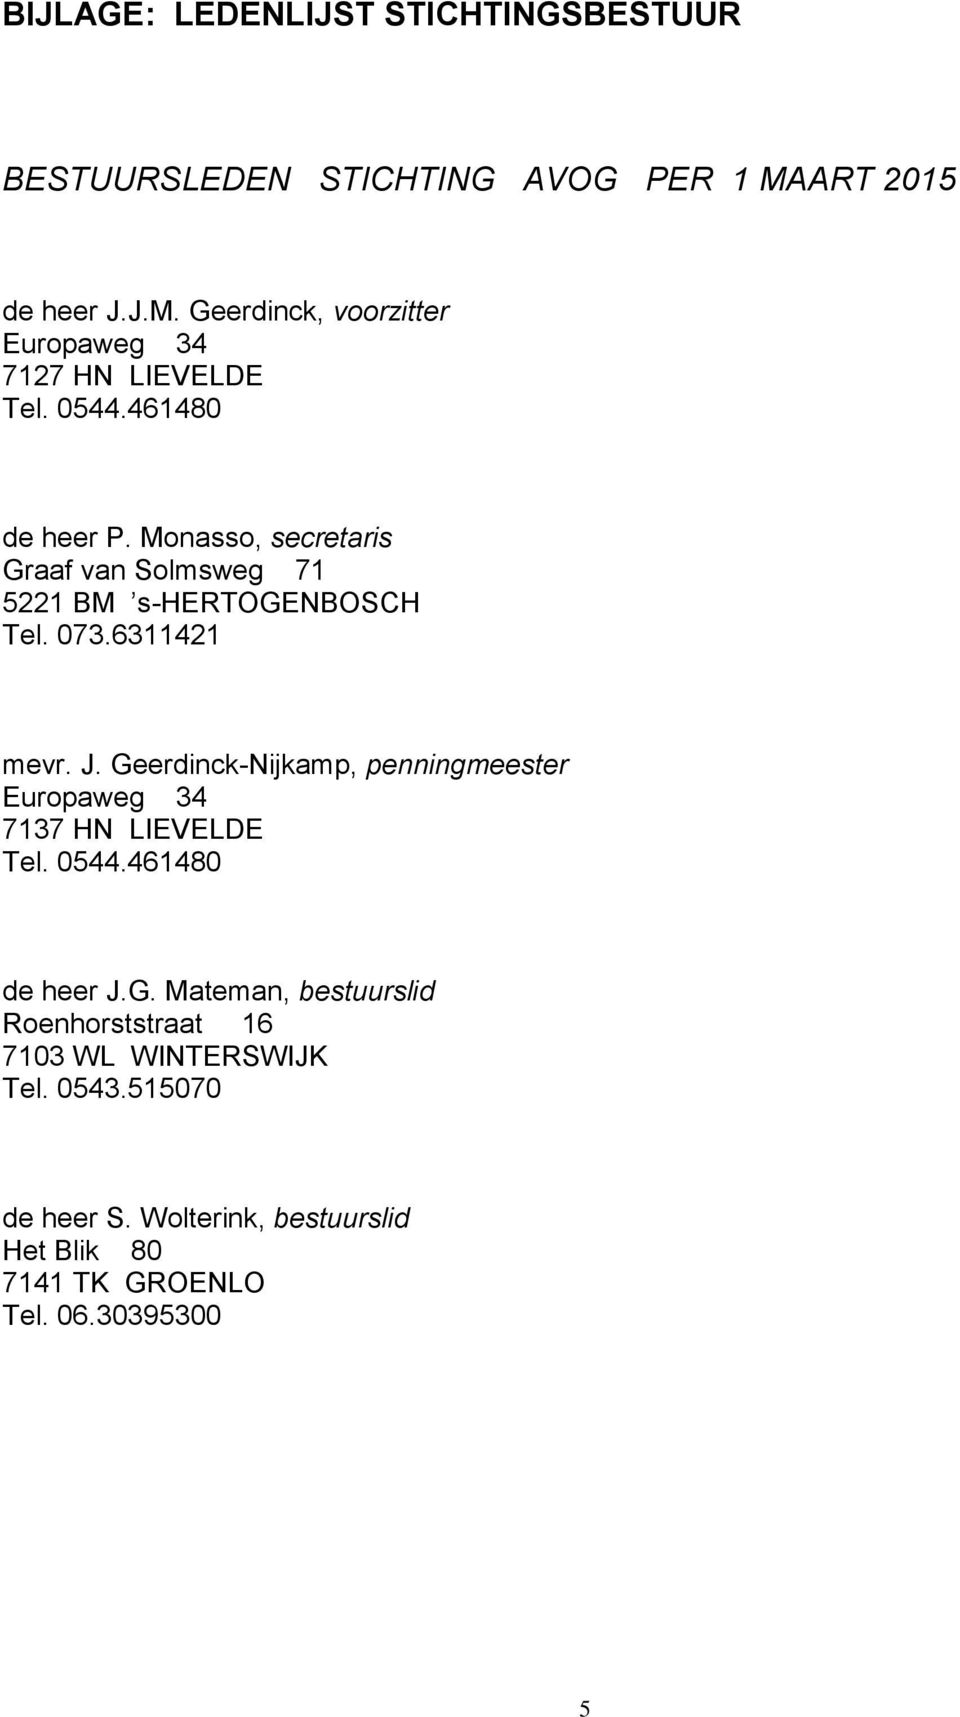 Geerdinck-Nijkamp, penningmeester 7137 HN LIEVELDE Tel. 0544.461480 de heer J.G. Mateman, bestuurslid Roenhorststraat 16 7103 WL WINTERSWIJK Tel.